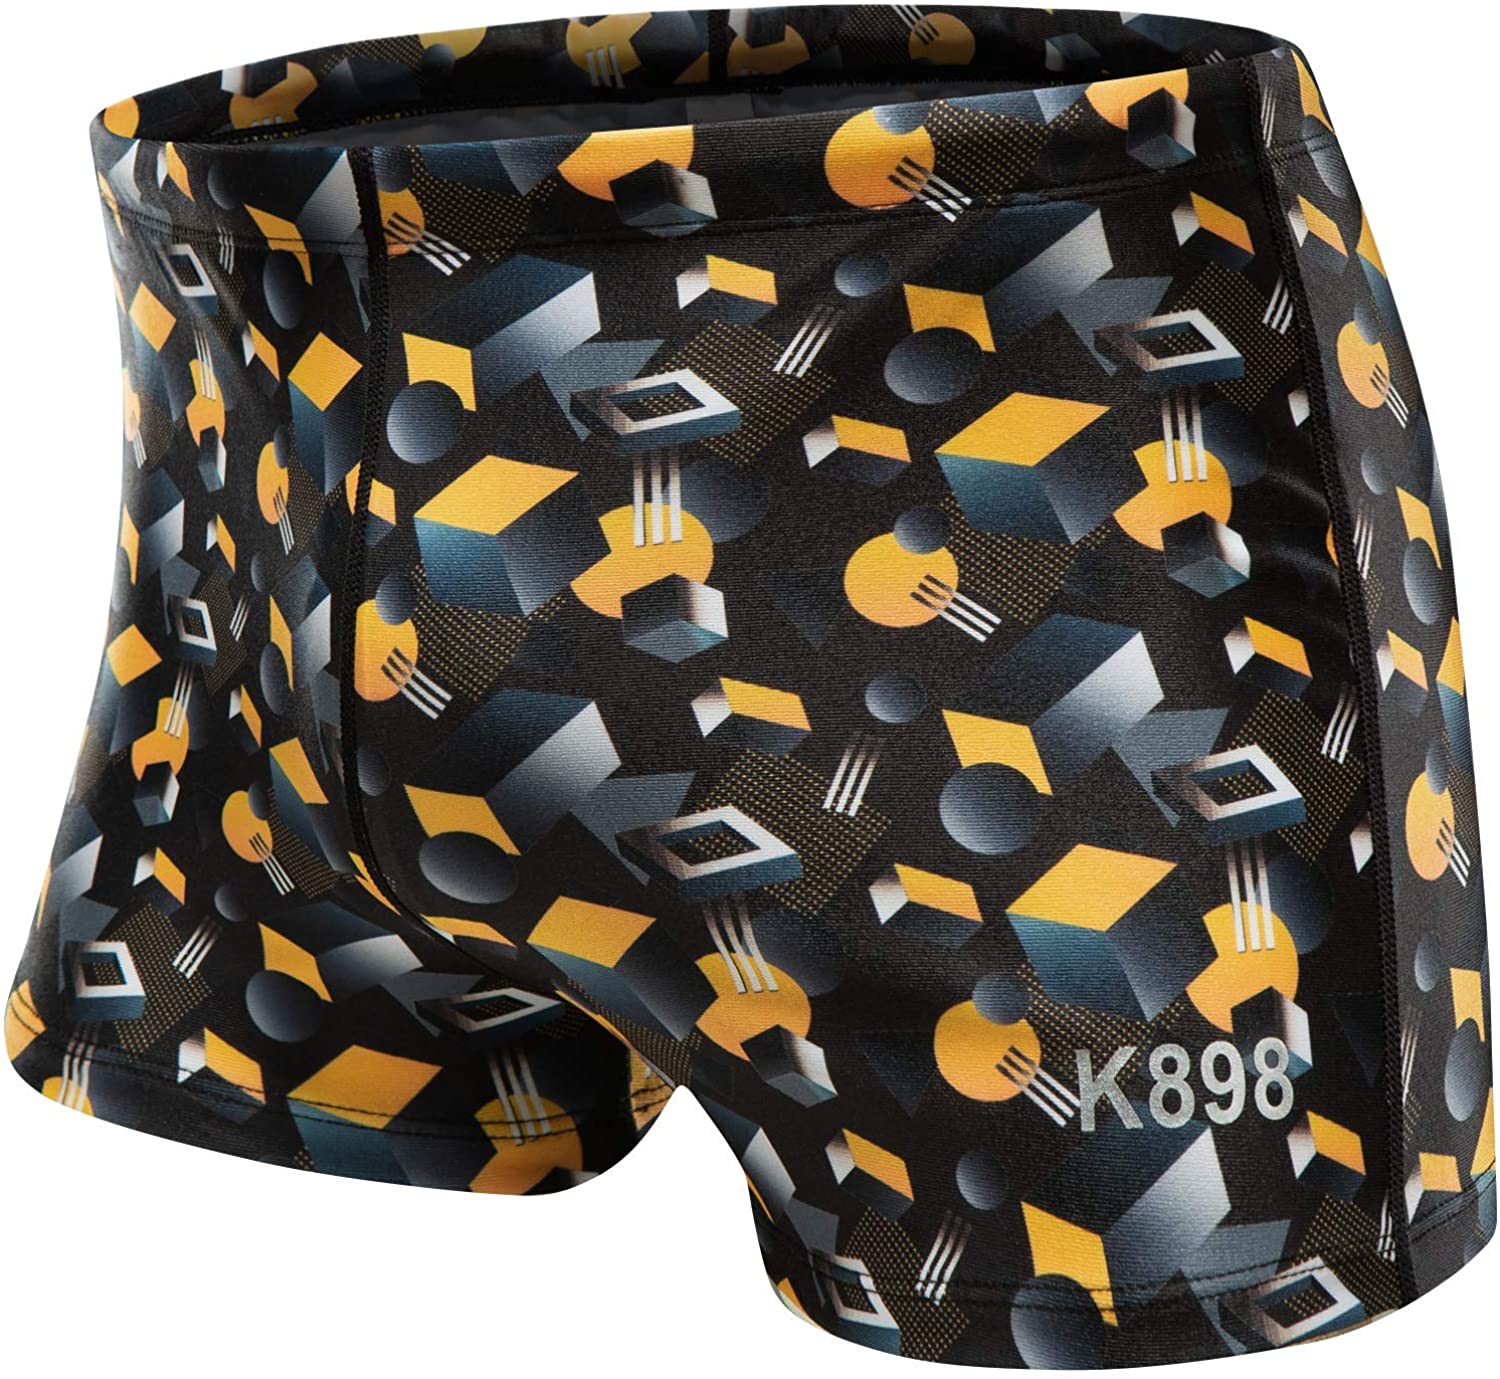 KGKE Men's Square Leg Short Swim Suit Swimsuit for PBT Fabric Shape Retention Quick Drying 